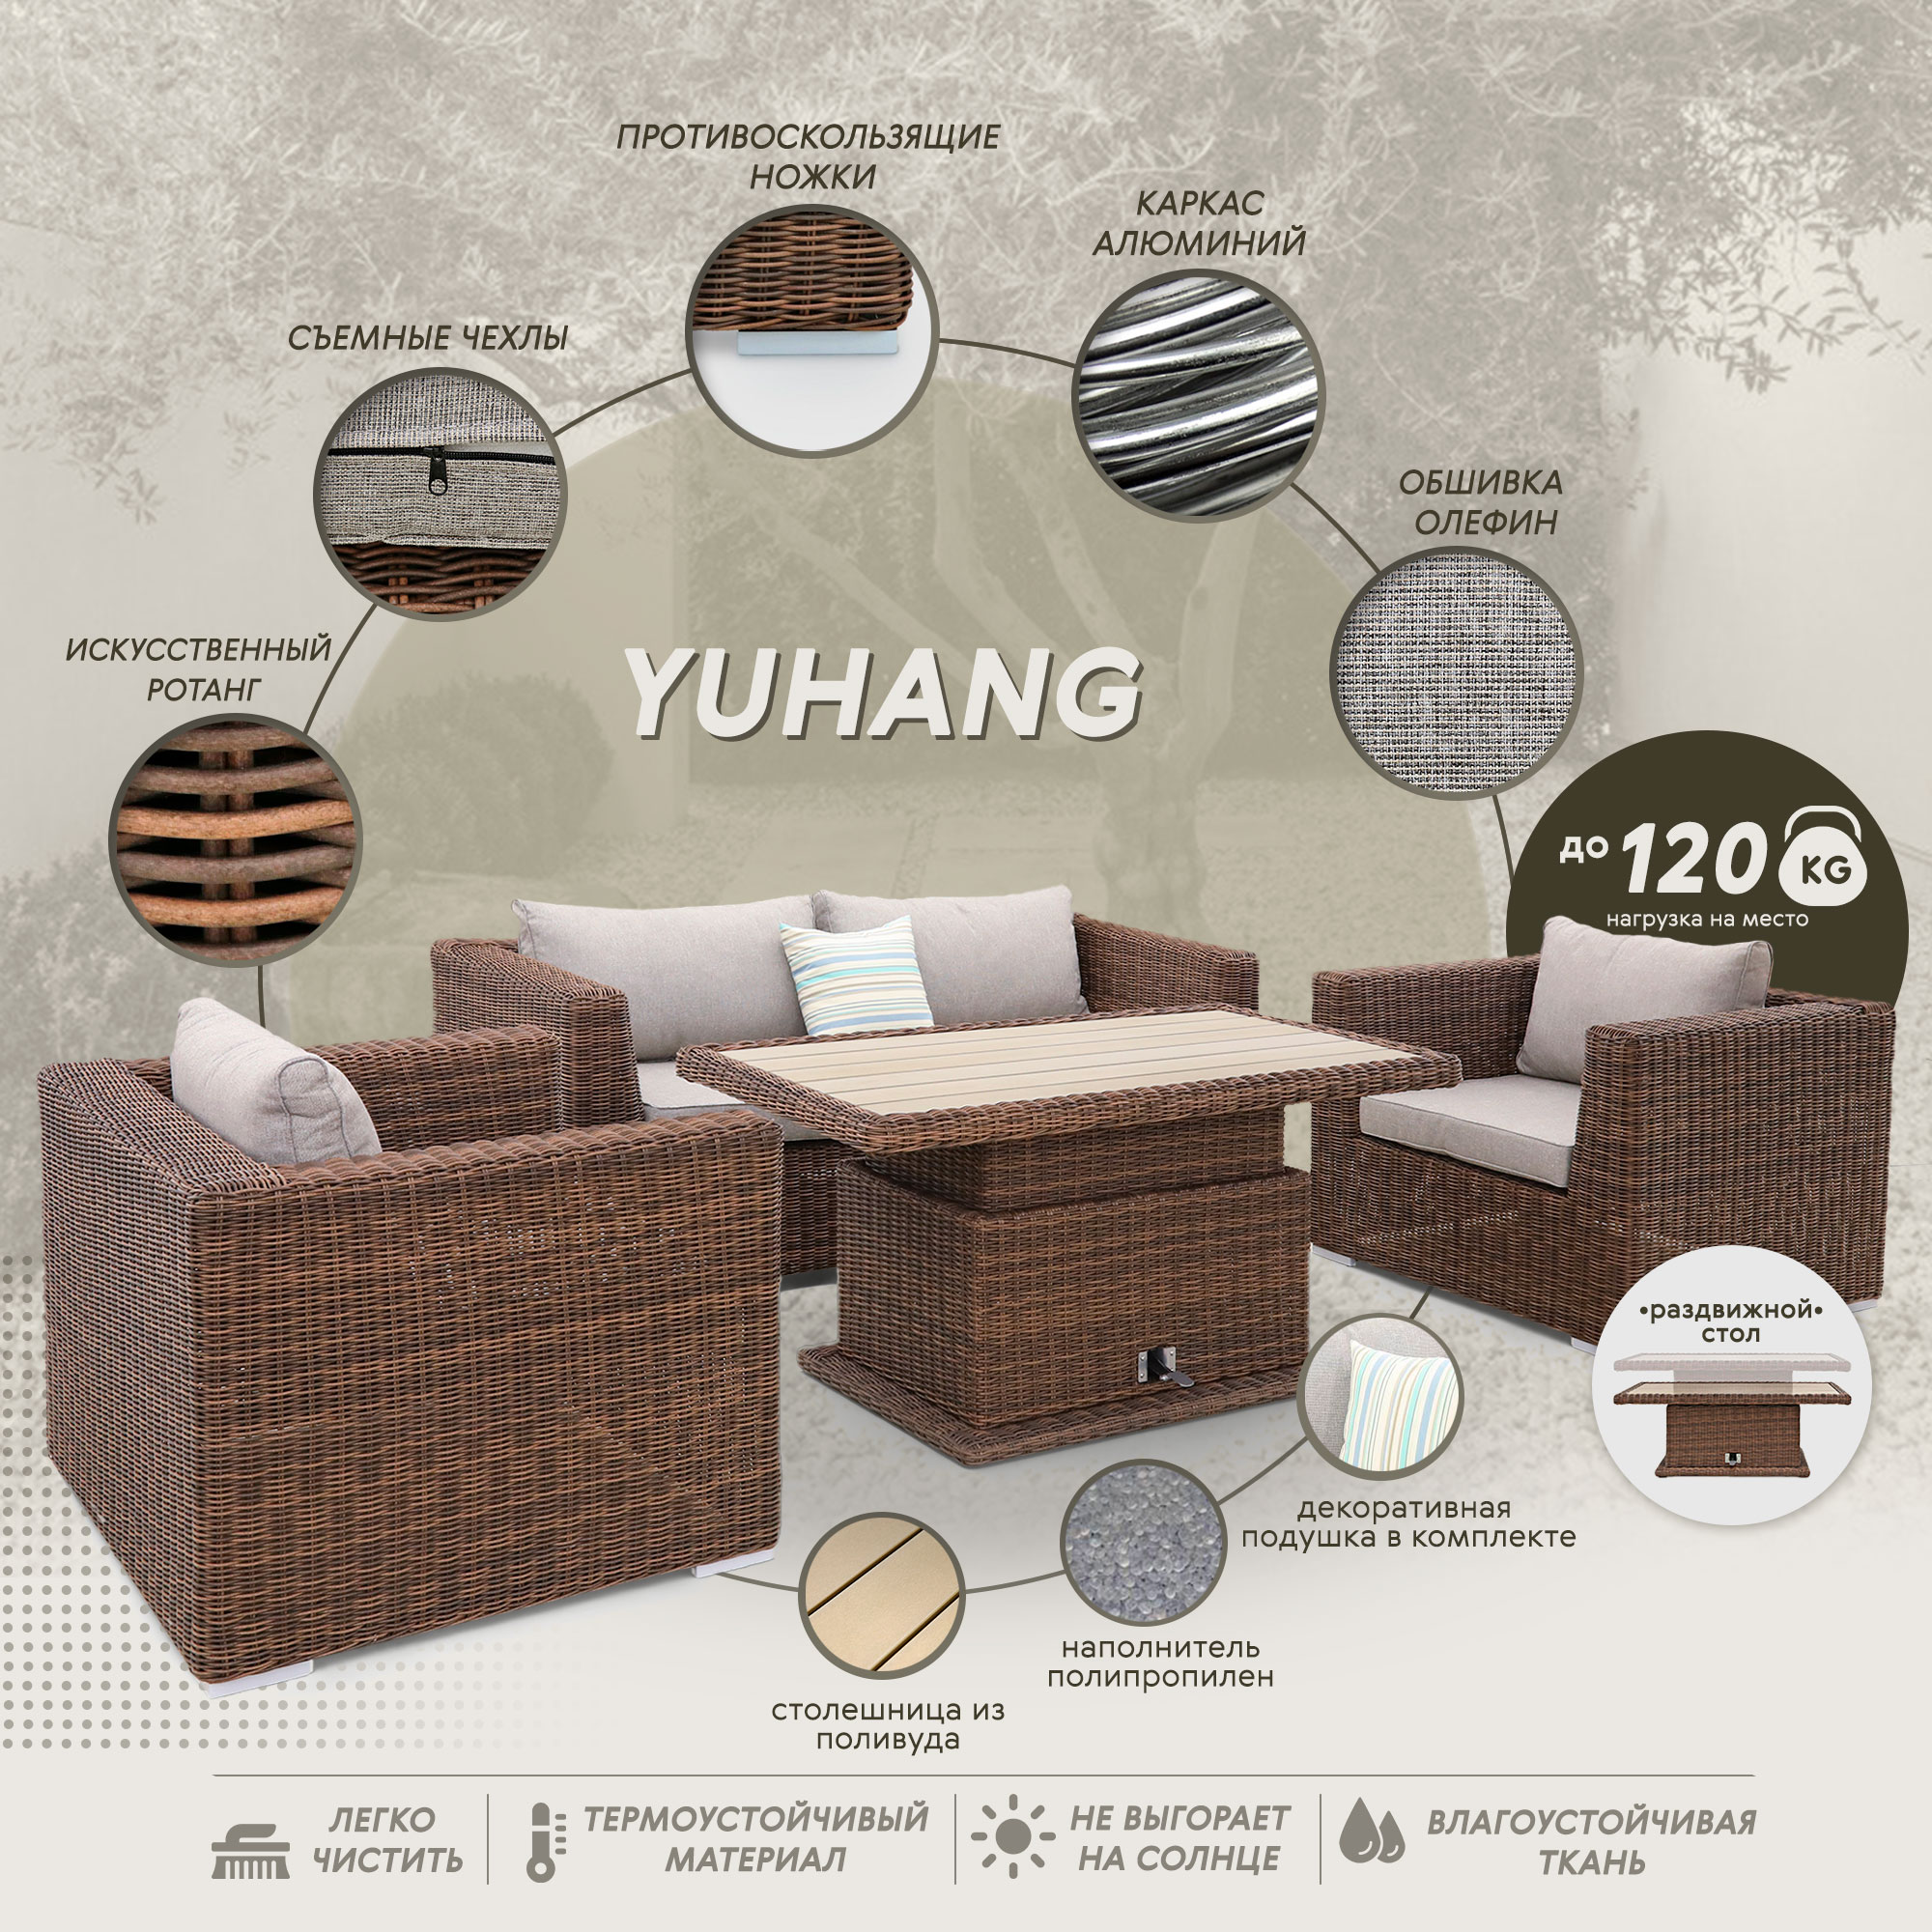 Комплект мебели Yuhang коричневый с серым 4 предмета, цвет бежевый, размер 205х98х80 - фото 3